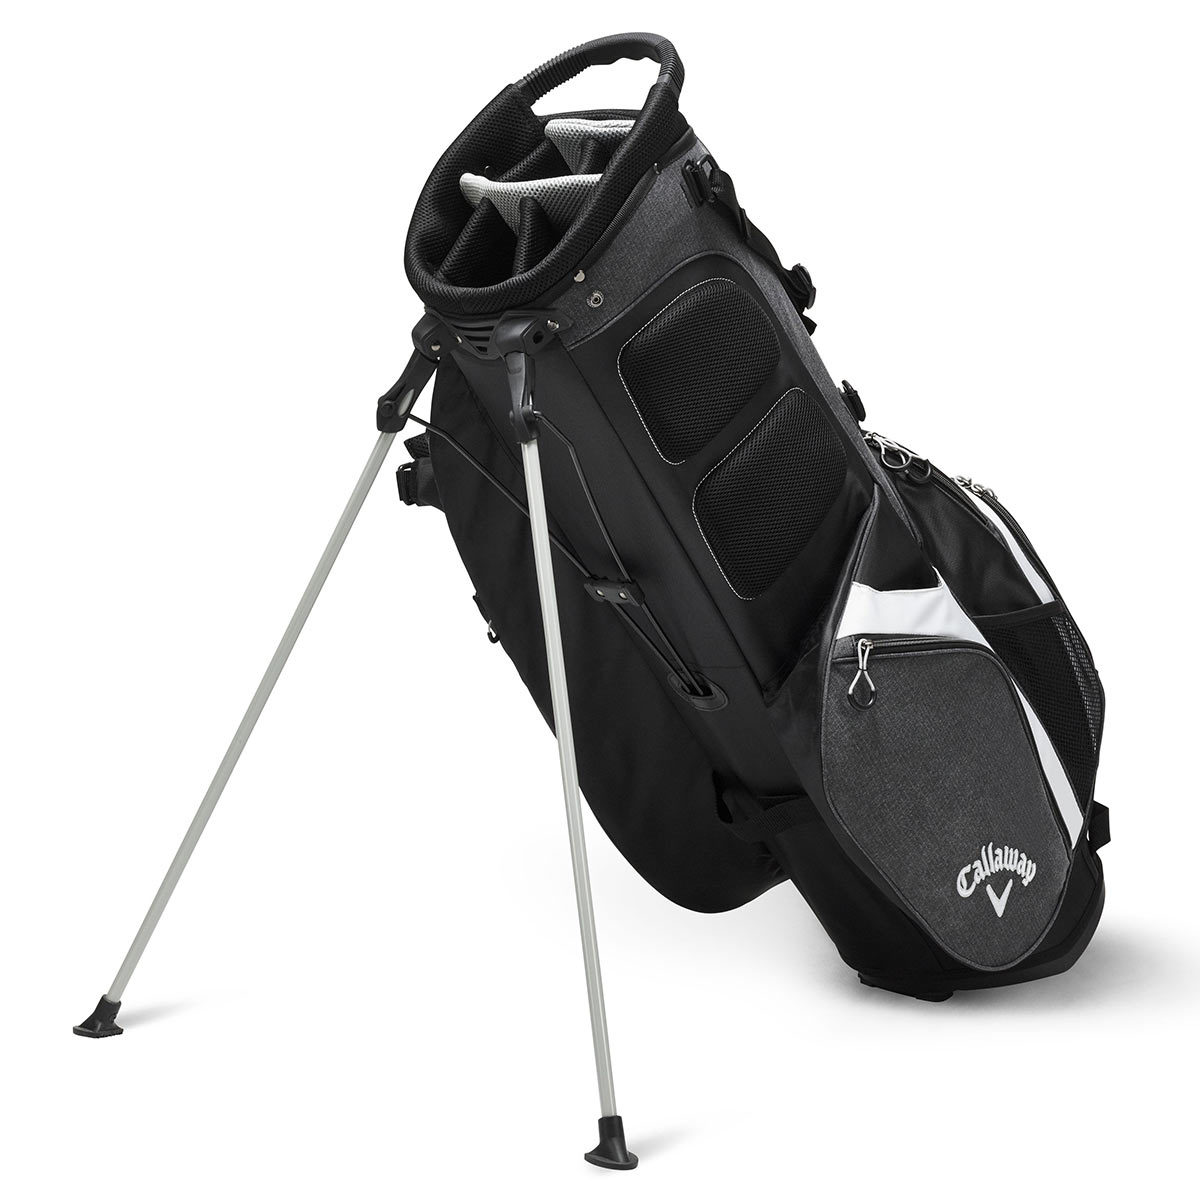 Callaway Premium Stand Bag in Black and Grey